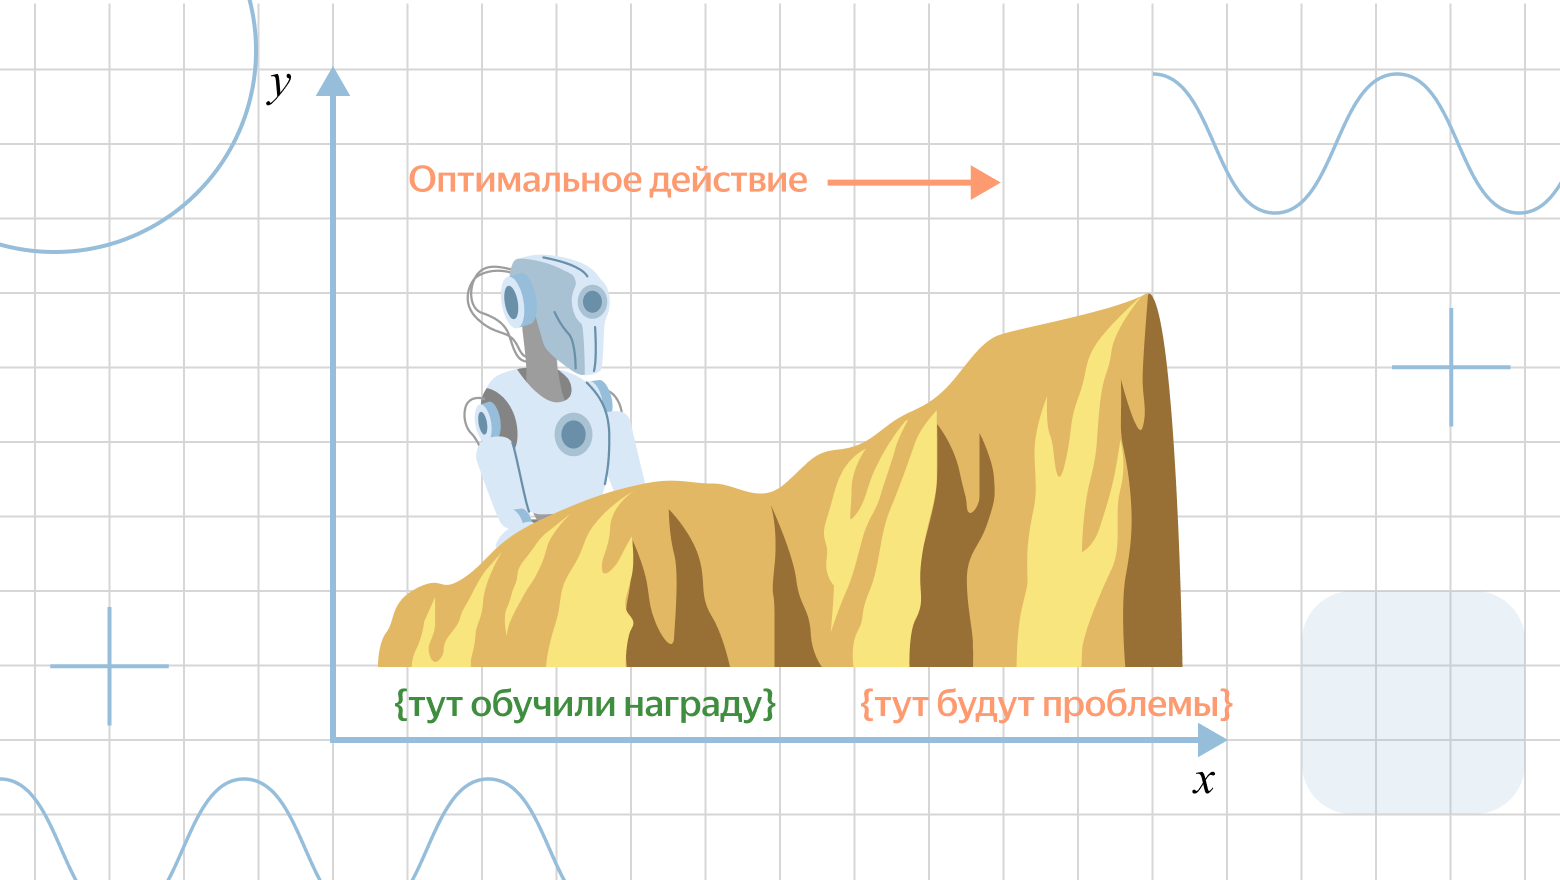 Как мы готовим RL для Alignment в больших языковых моделях: опыт команды YandexGPT - 78